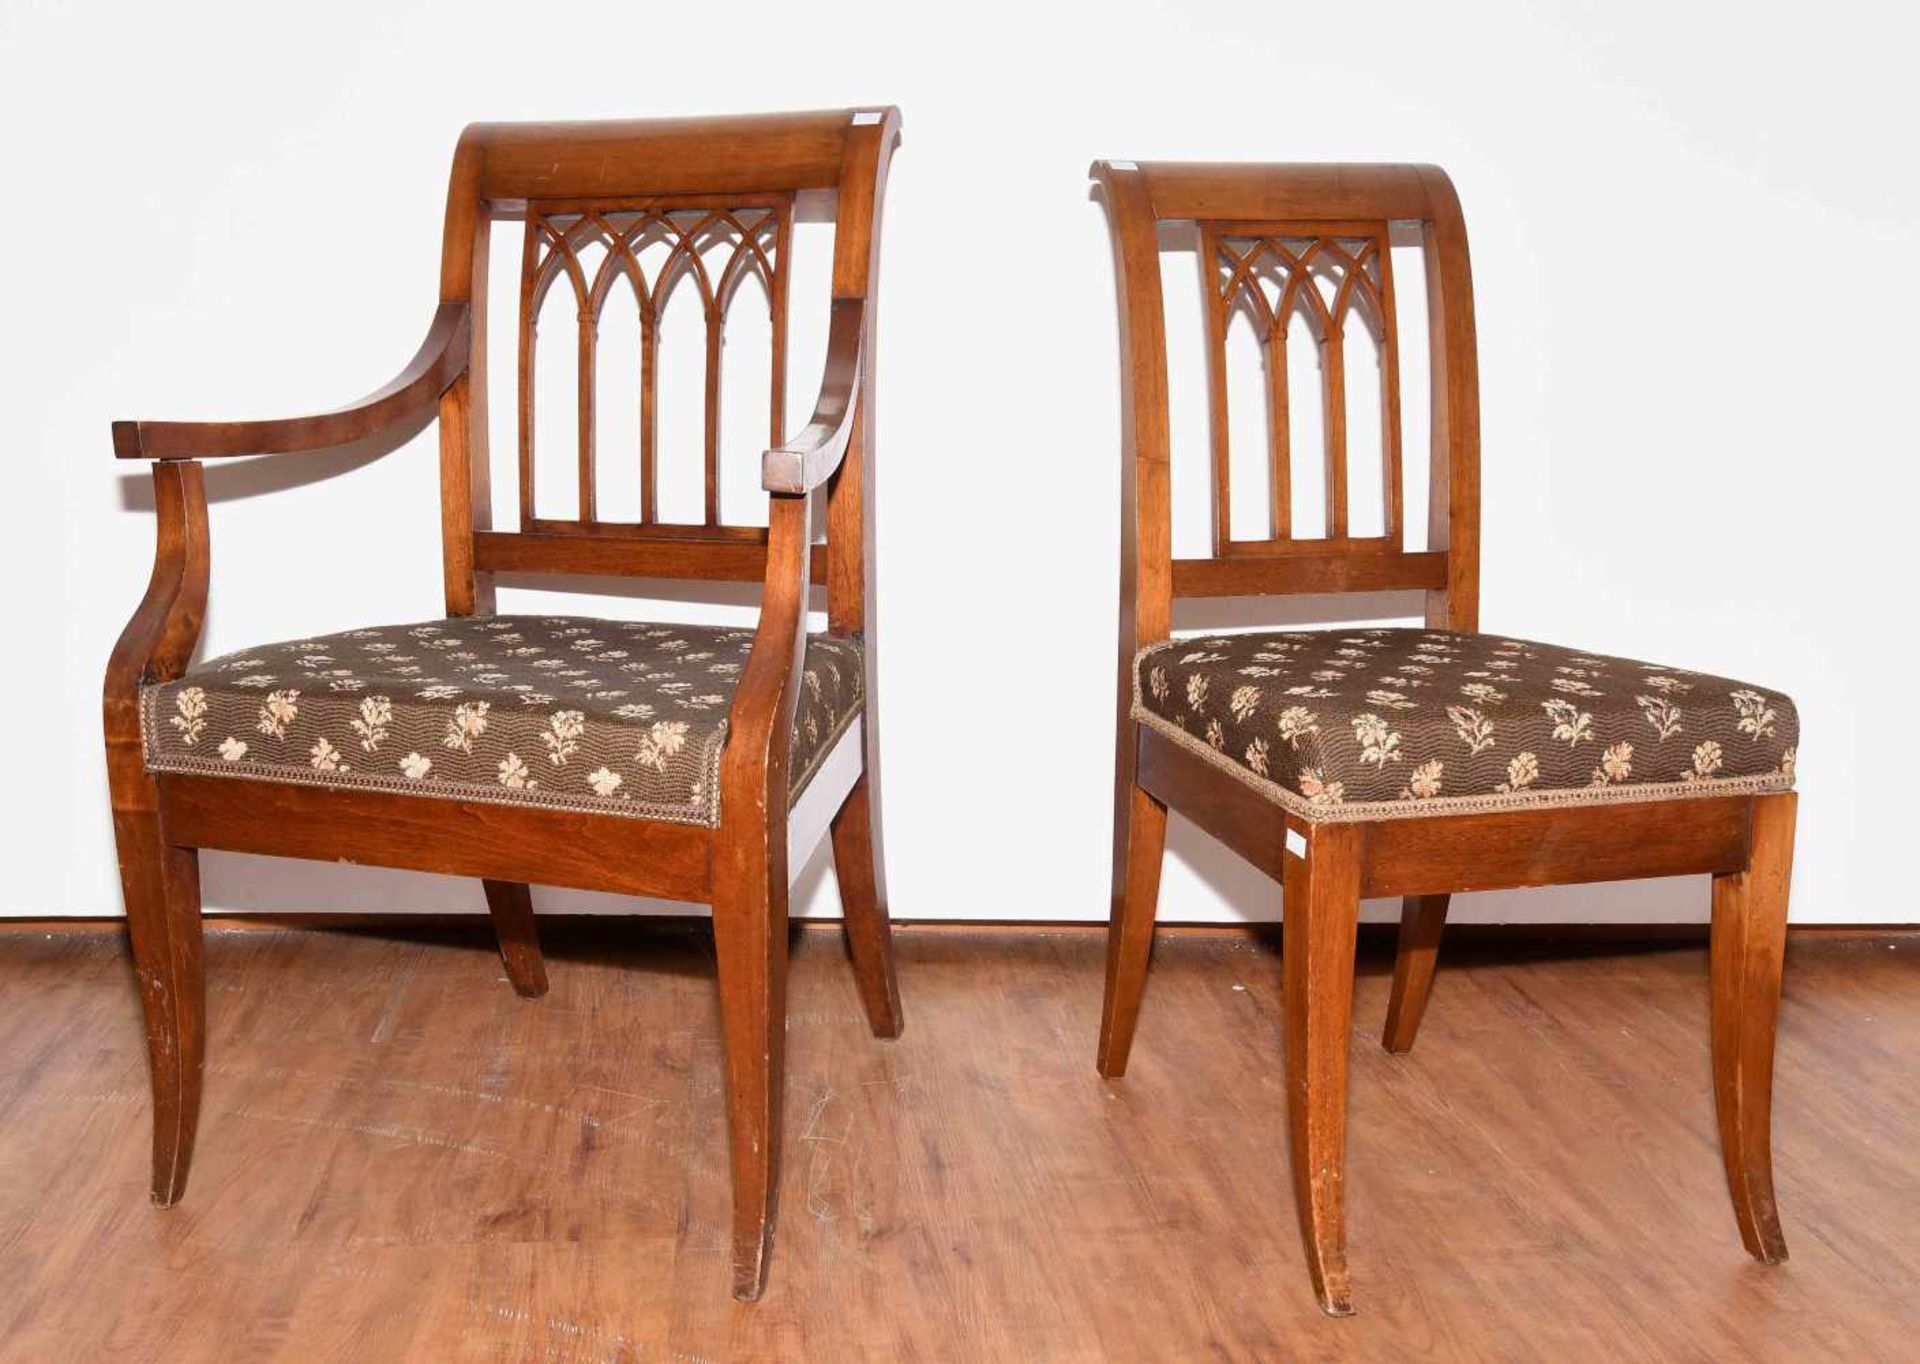 Satz von sechs Stühlen und ein Armlehnstuhl Biedermeier ca. 1820. Nussbaum. Trapezförmiges Gestell